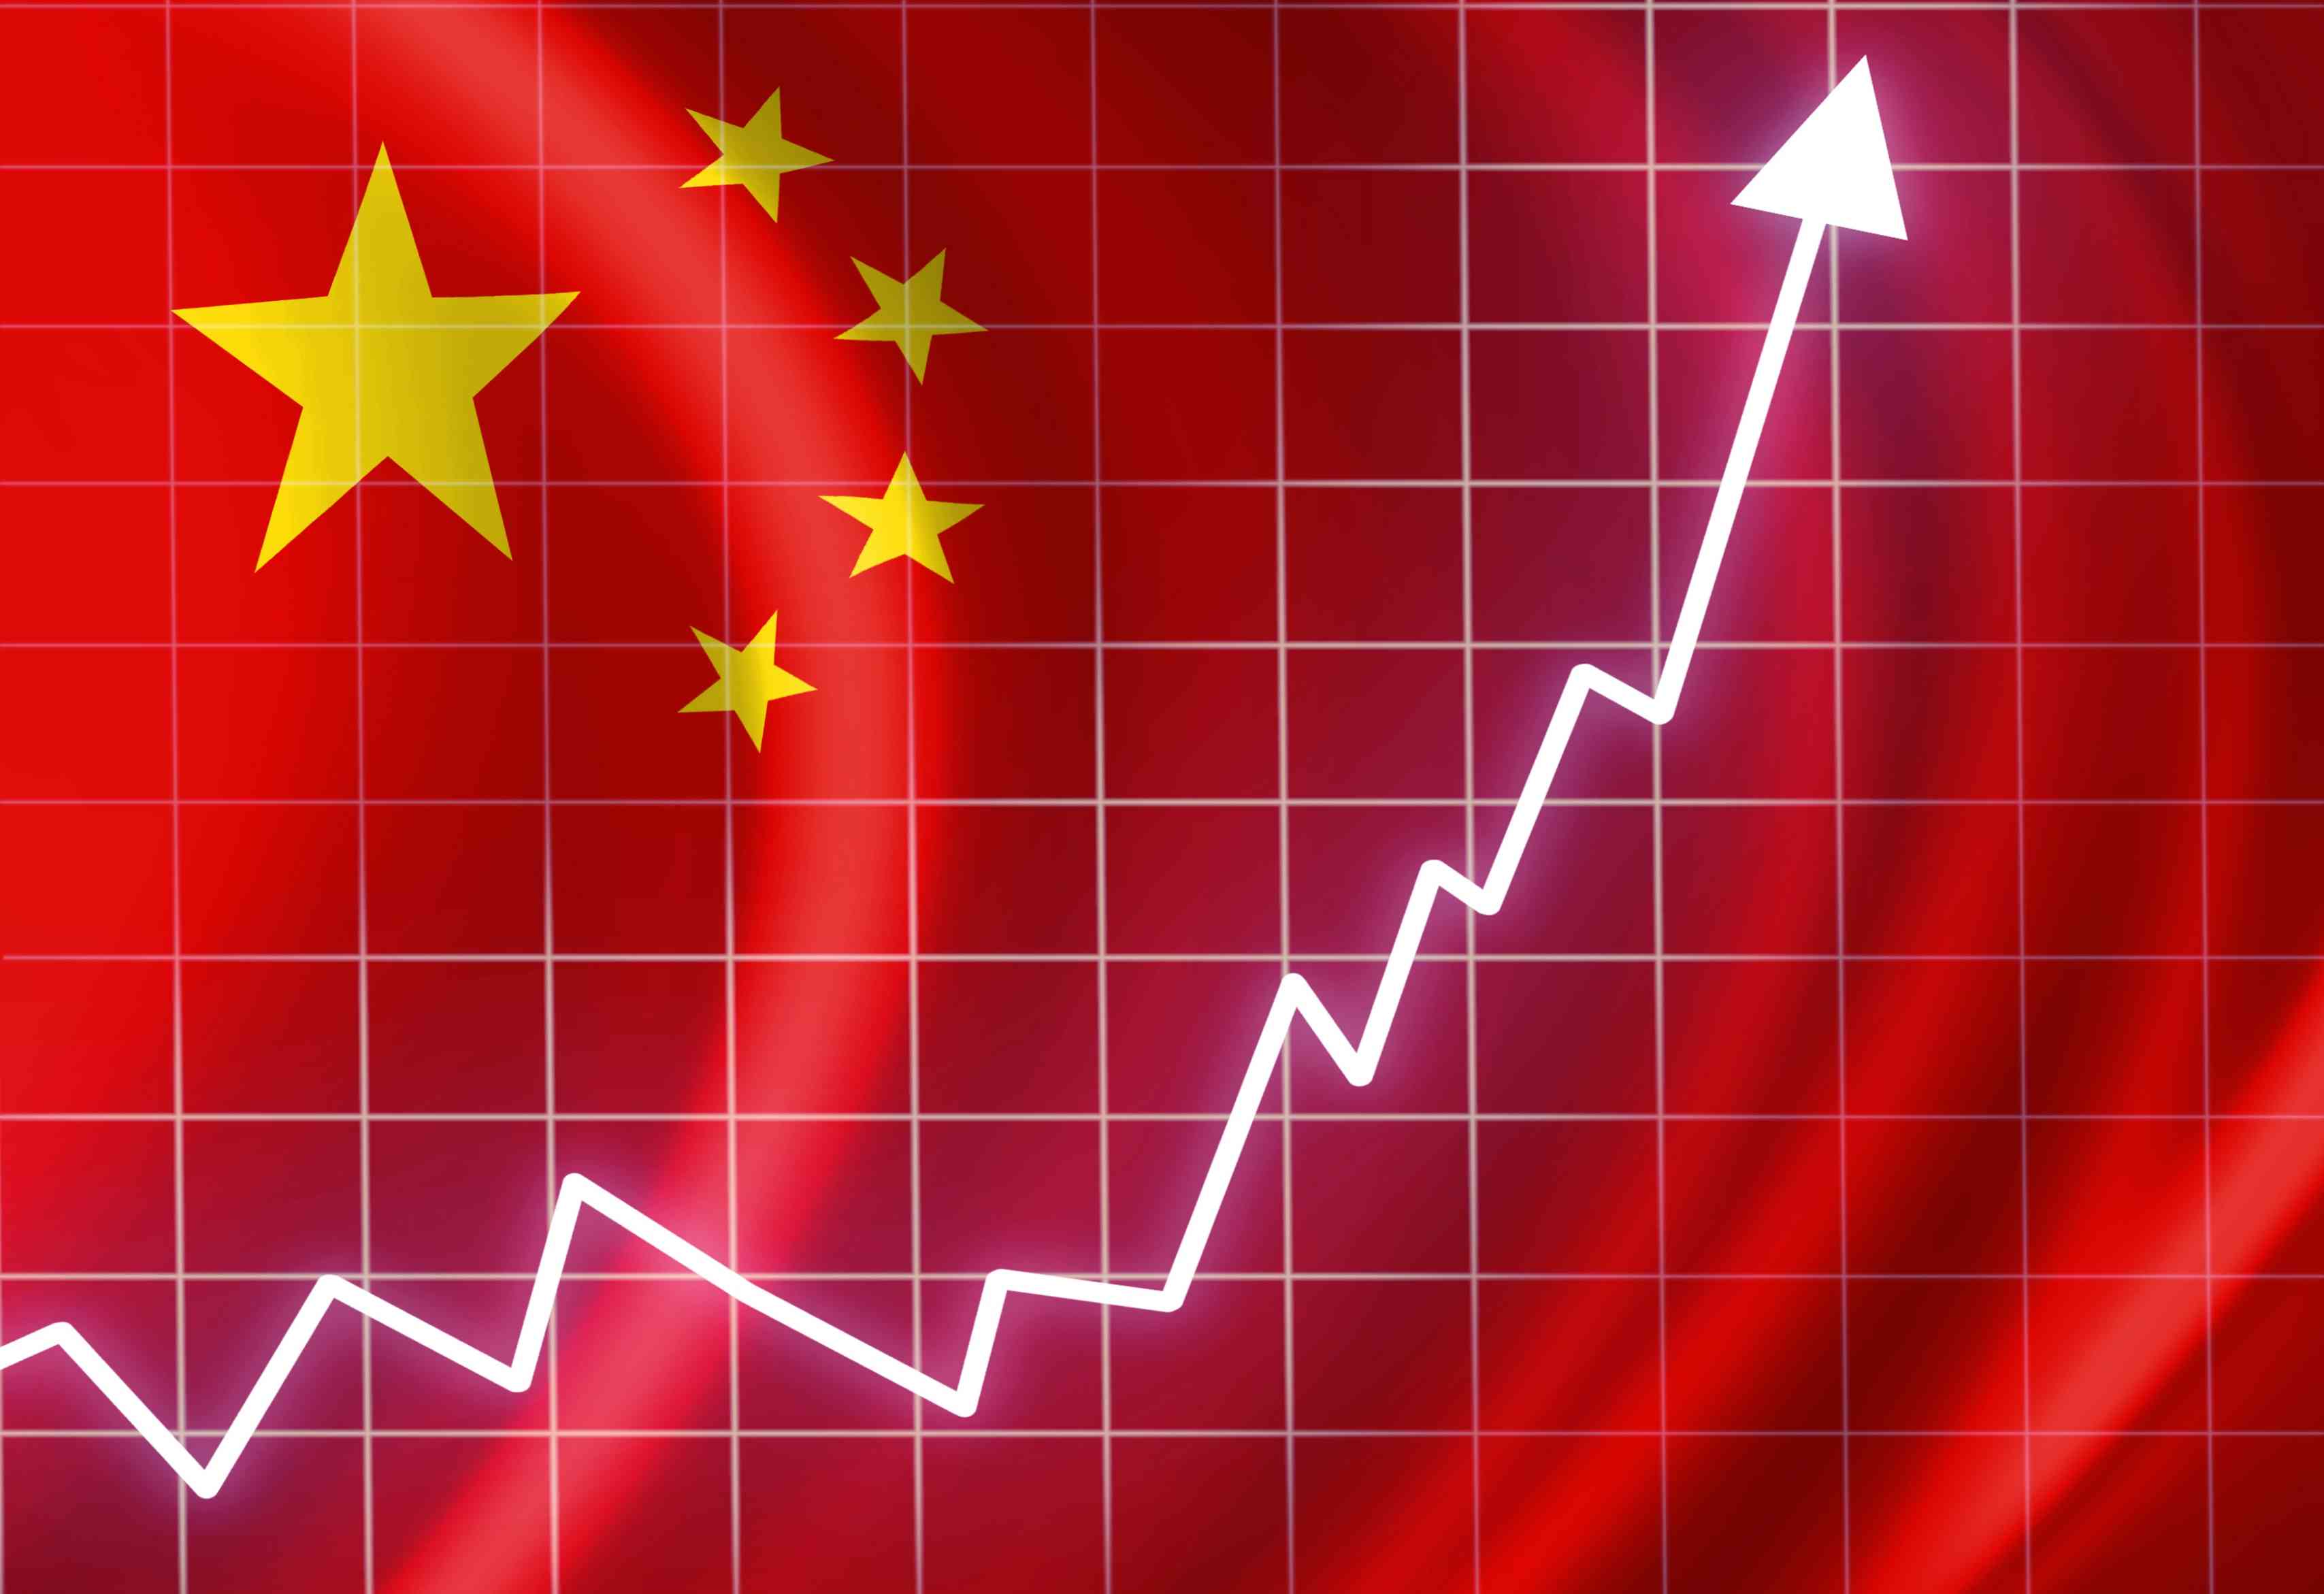 اقتصاد الصين ينمو بمعدل 5.2% خلال الربع الأخير - بوابة الشروق - نسخة  الموبايل